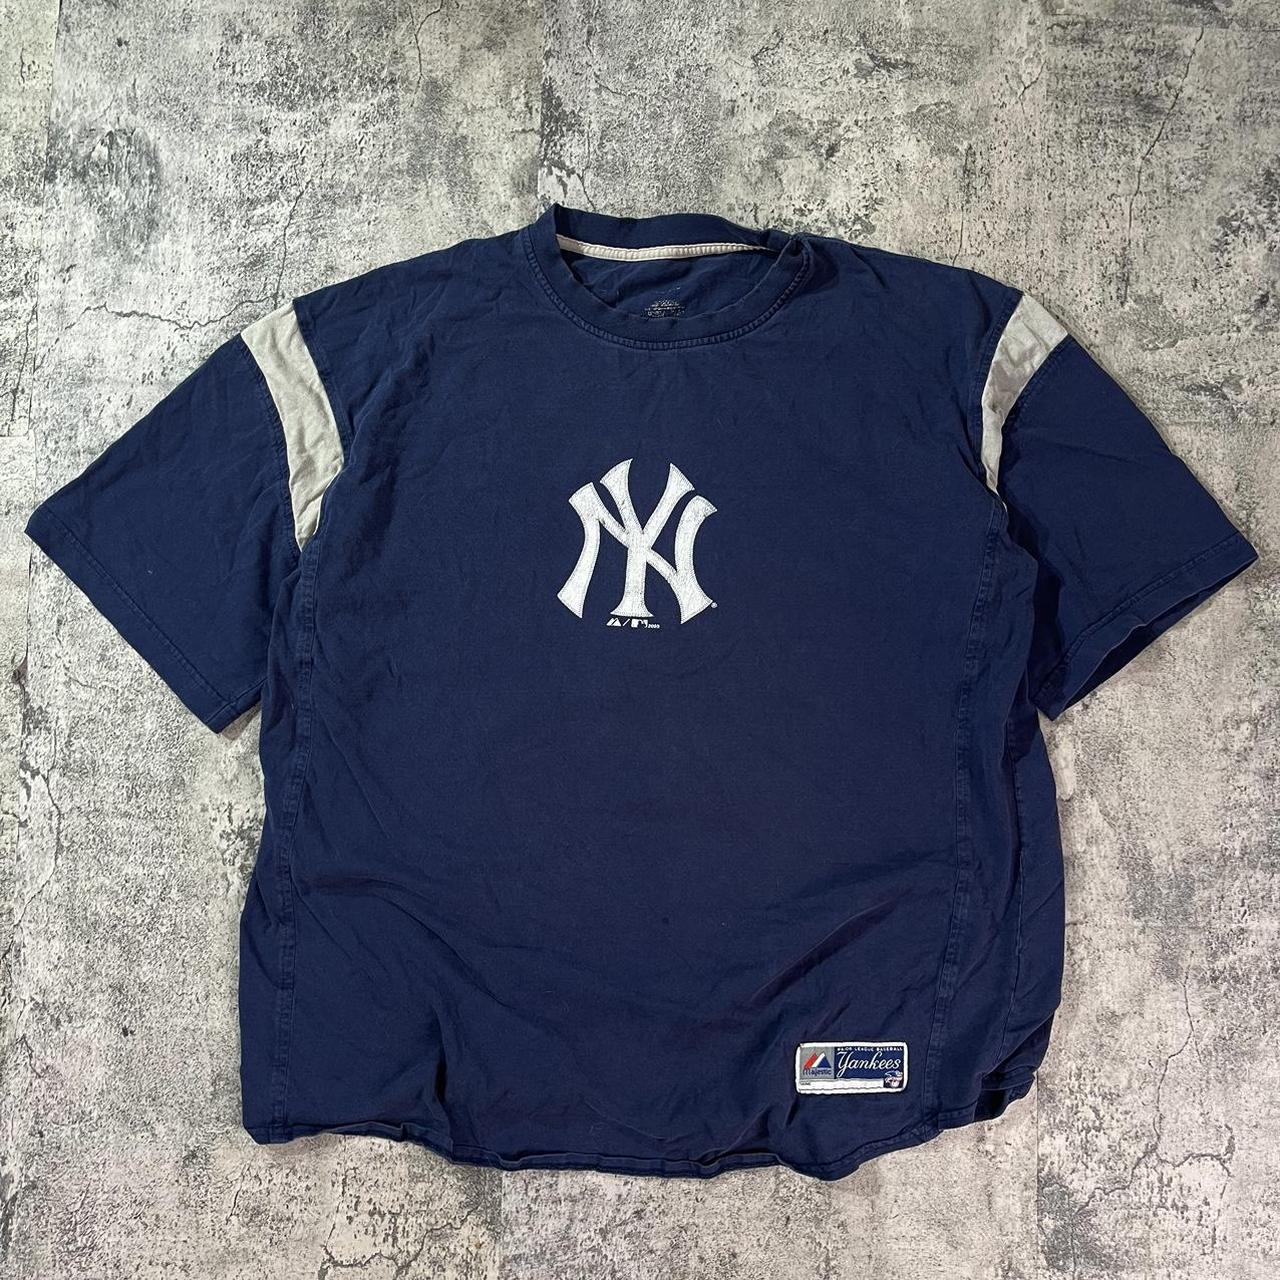 Vintage New York Yankees Tee. 2000s Yankees Boxy... - Depop